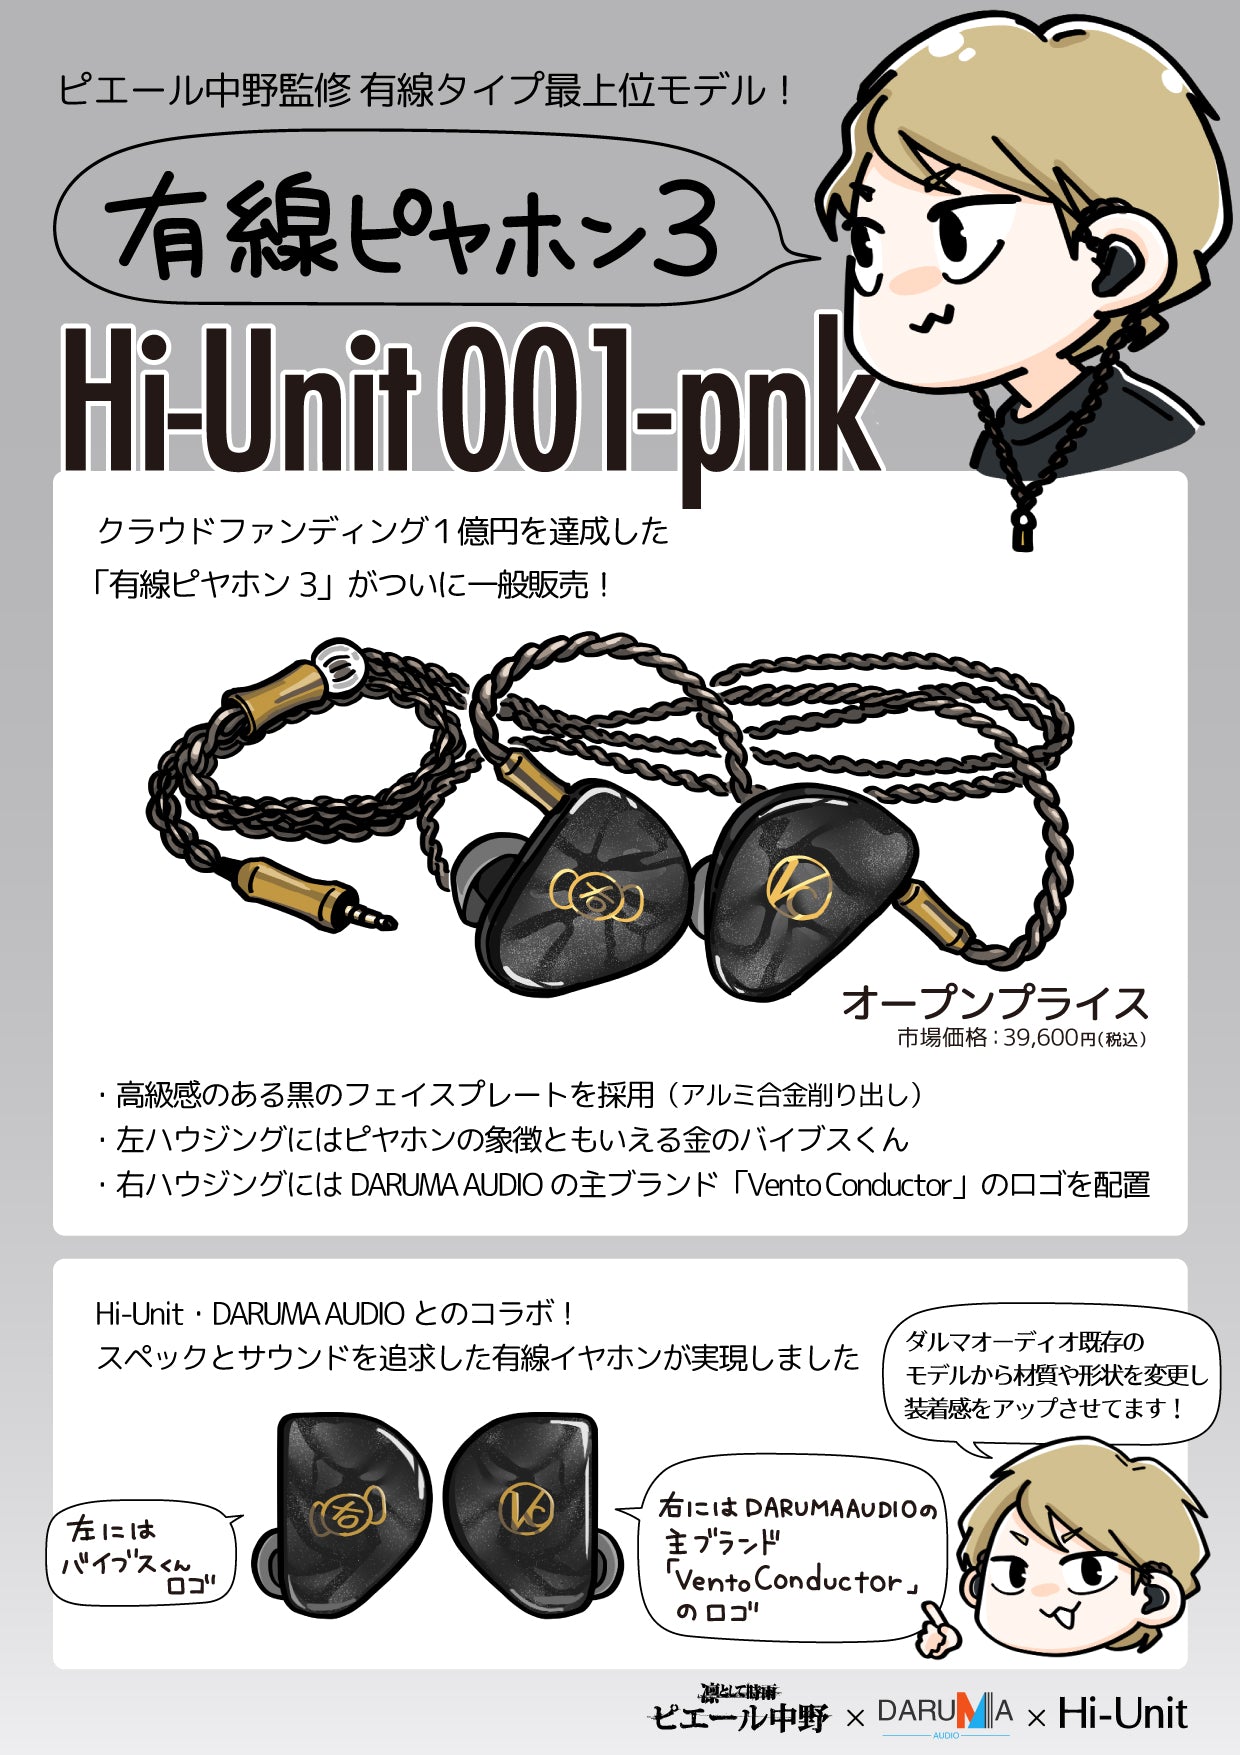 有線ピヤホン3 hi-unit 001-pink ピエール中野モデル